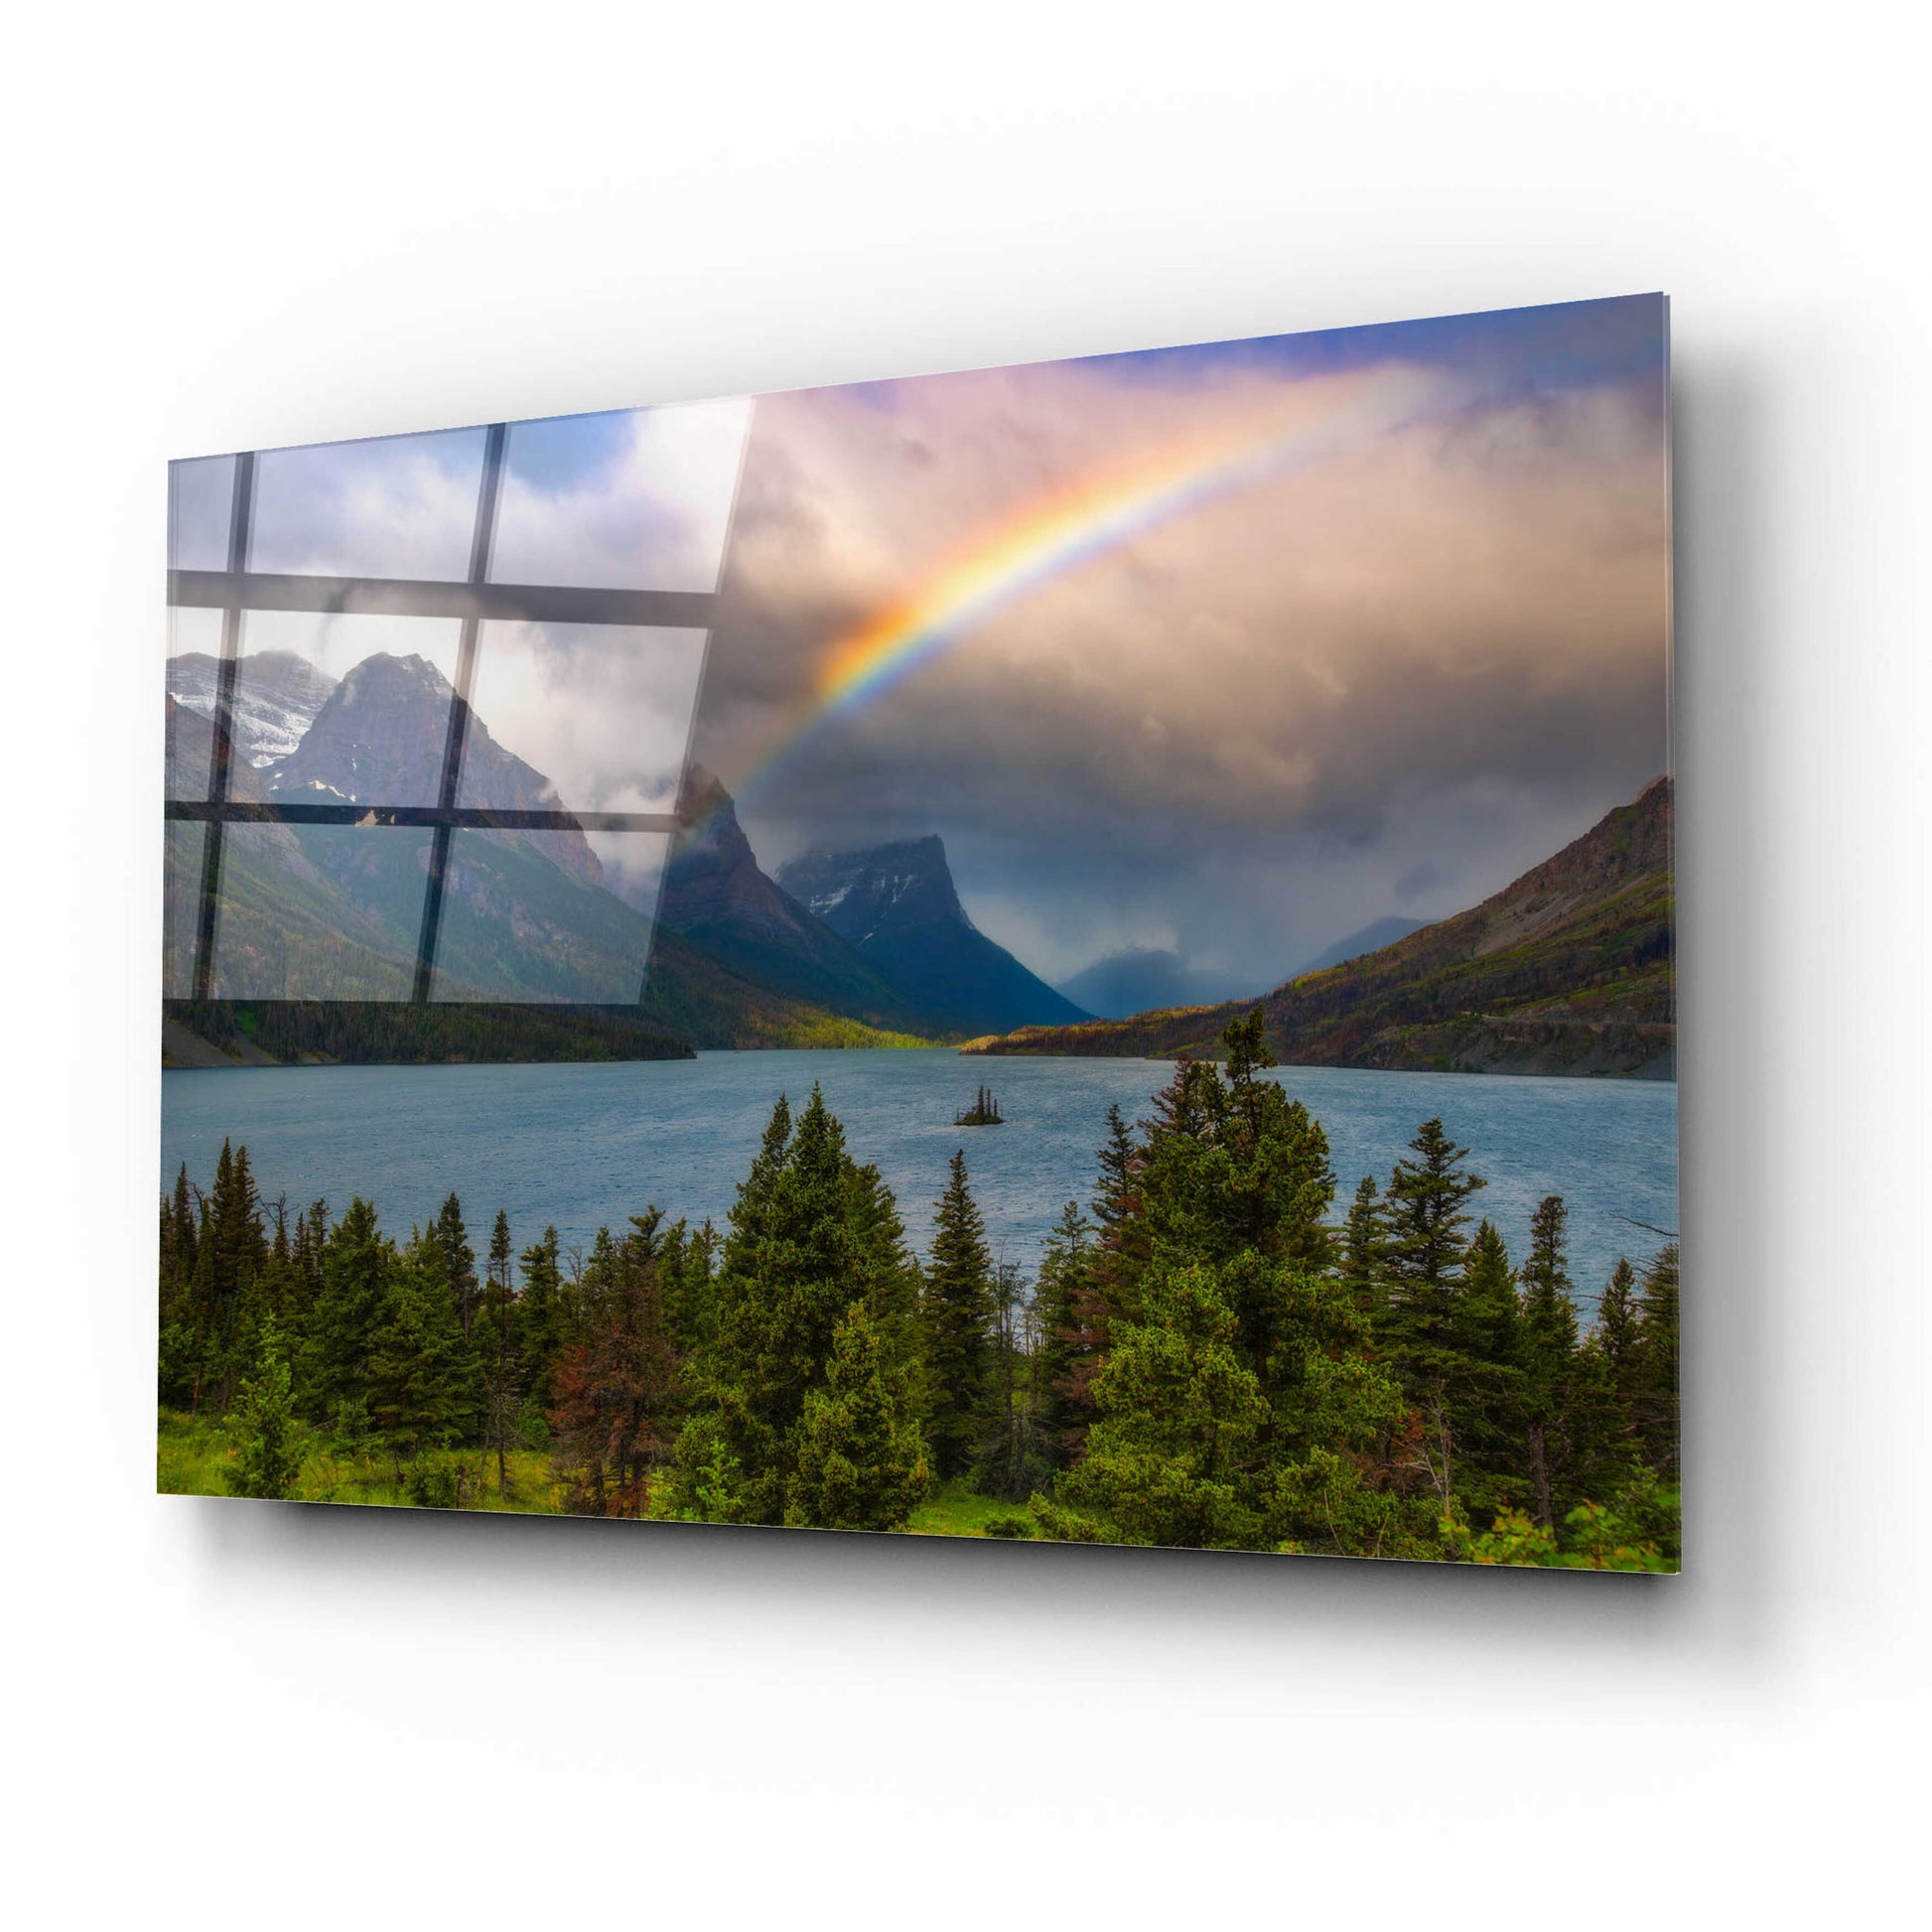 Epic Art 'Glacier Rainbow - Glacier National Park' by Darren White, Acrylic Glass Wall Art,16x12